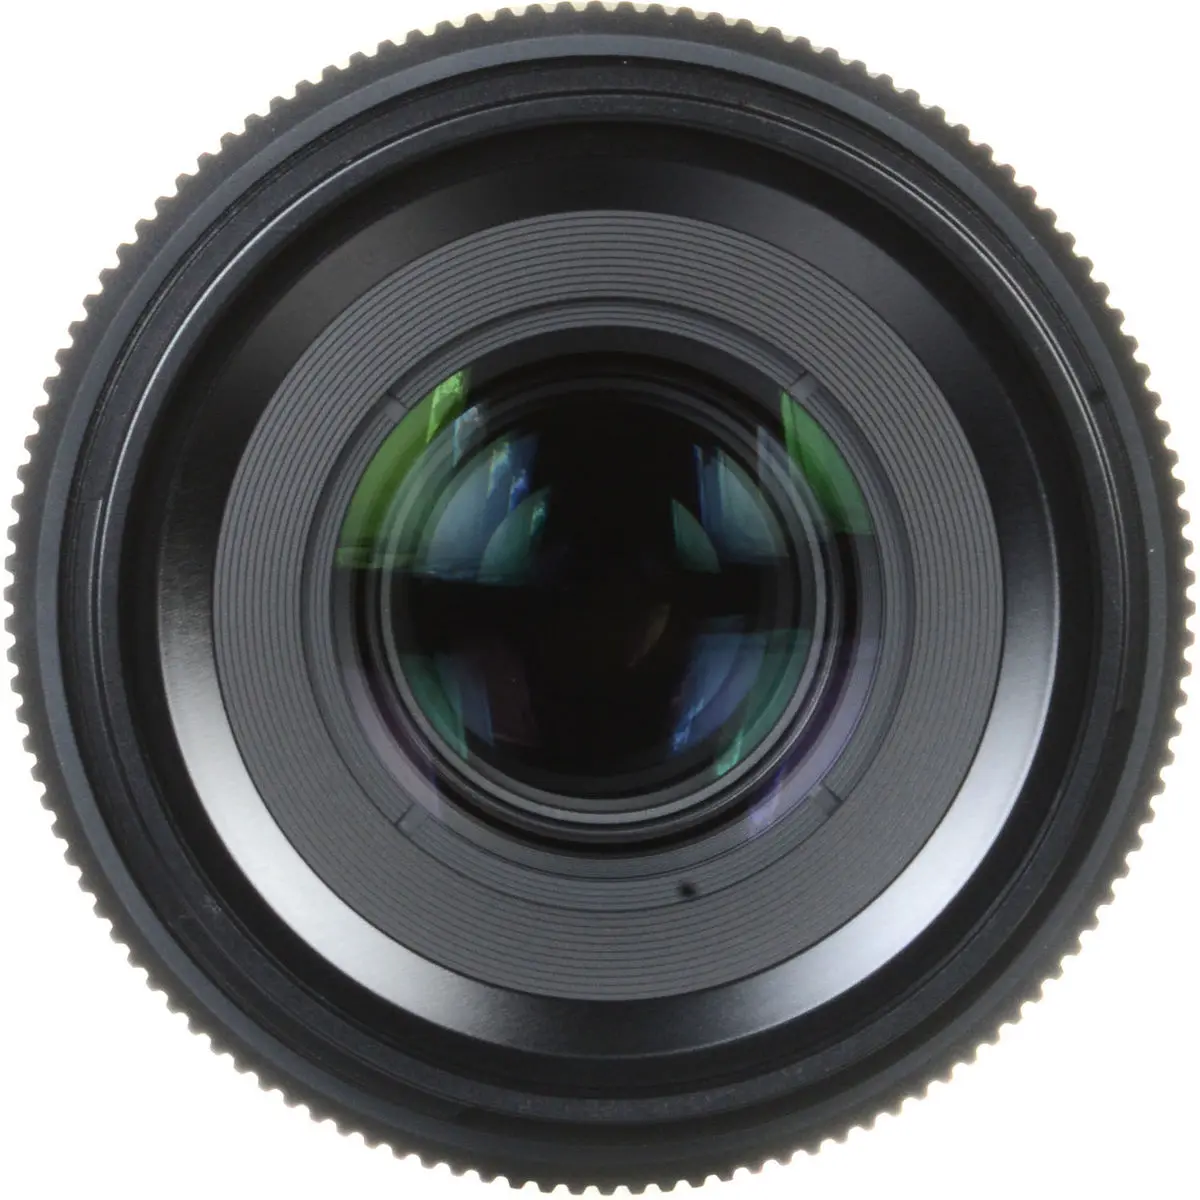 4. FUJINON GF 120mm f/4 R LM OIS WR Macro Lens Lens